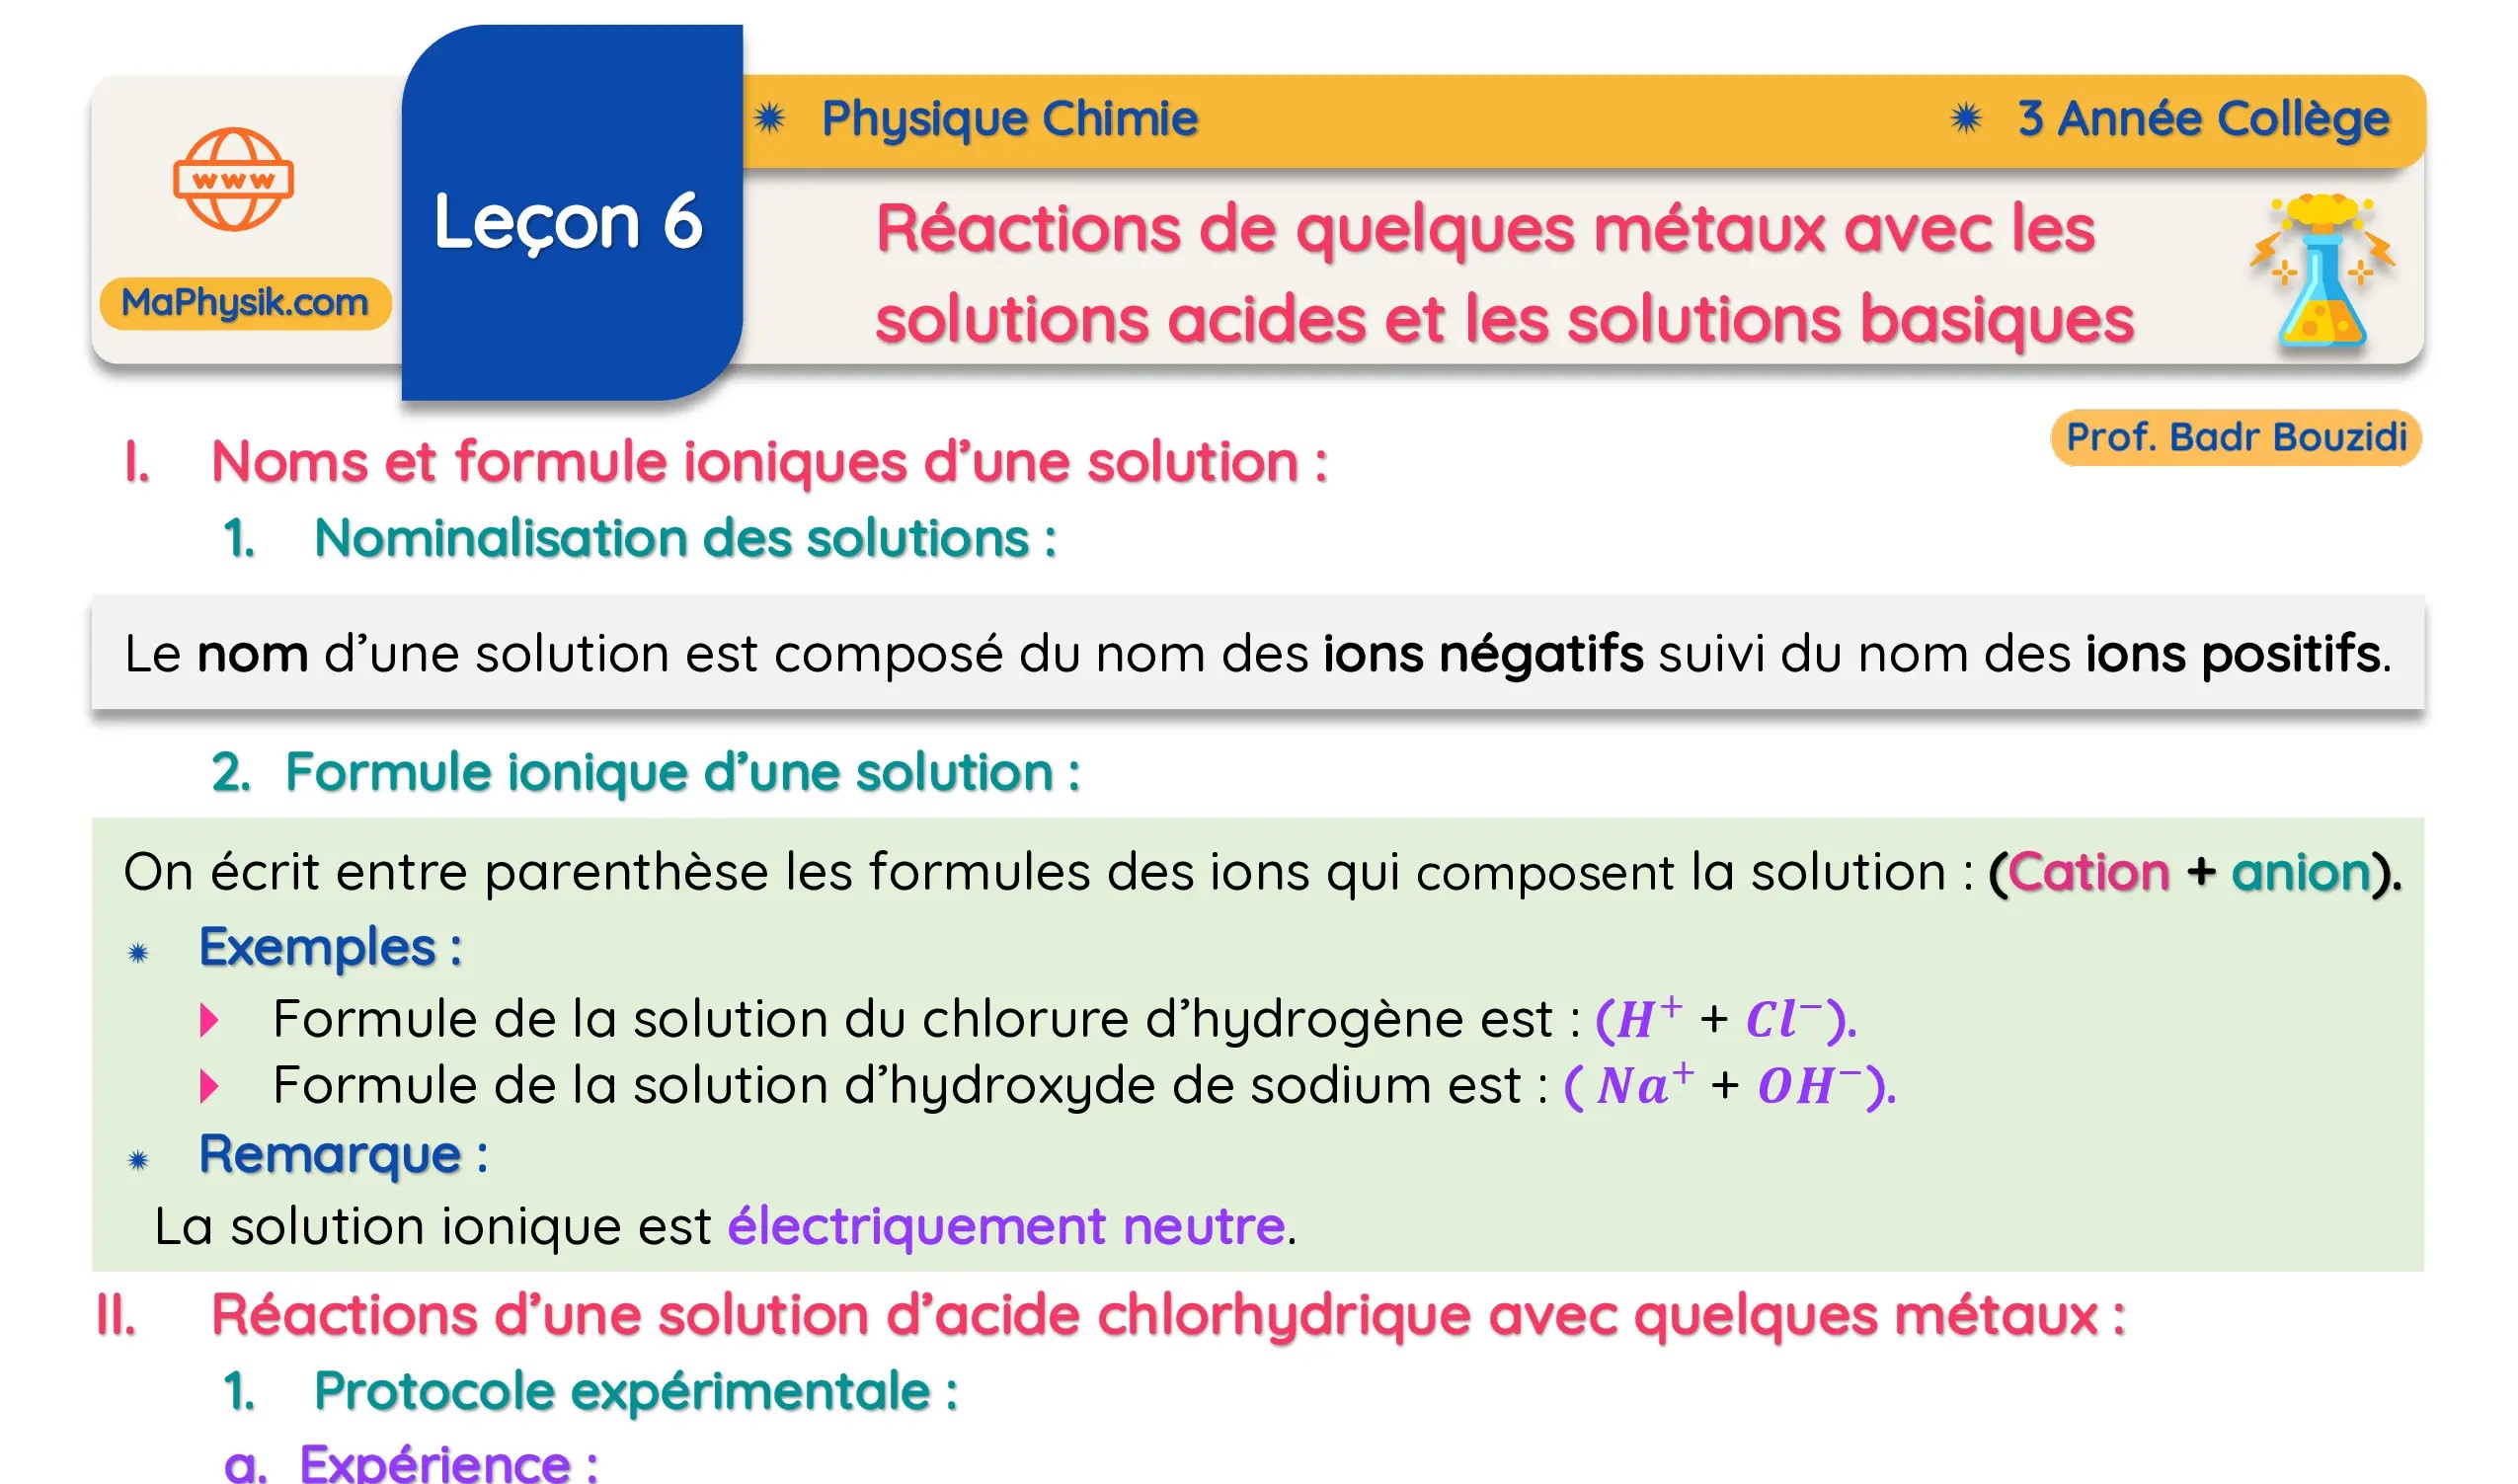 Leçon 6 : Réactions de quelques métaux avec les solutions acides et les solutions basiques | Phyique chimie | 3 Année Colège